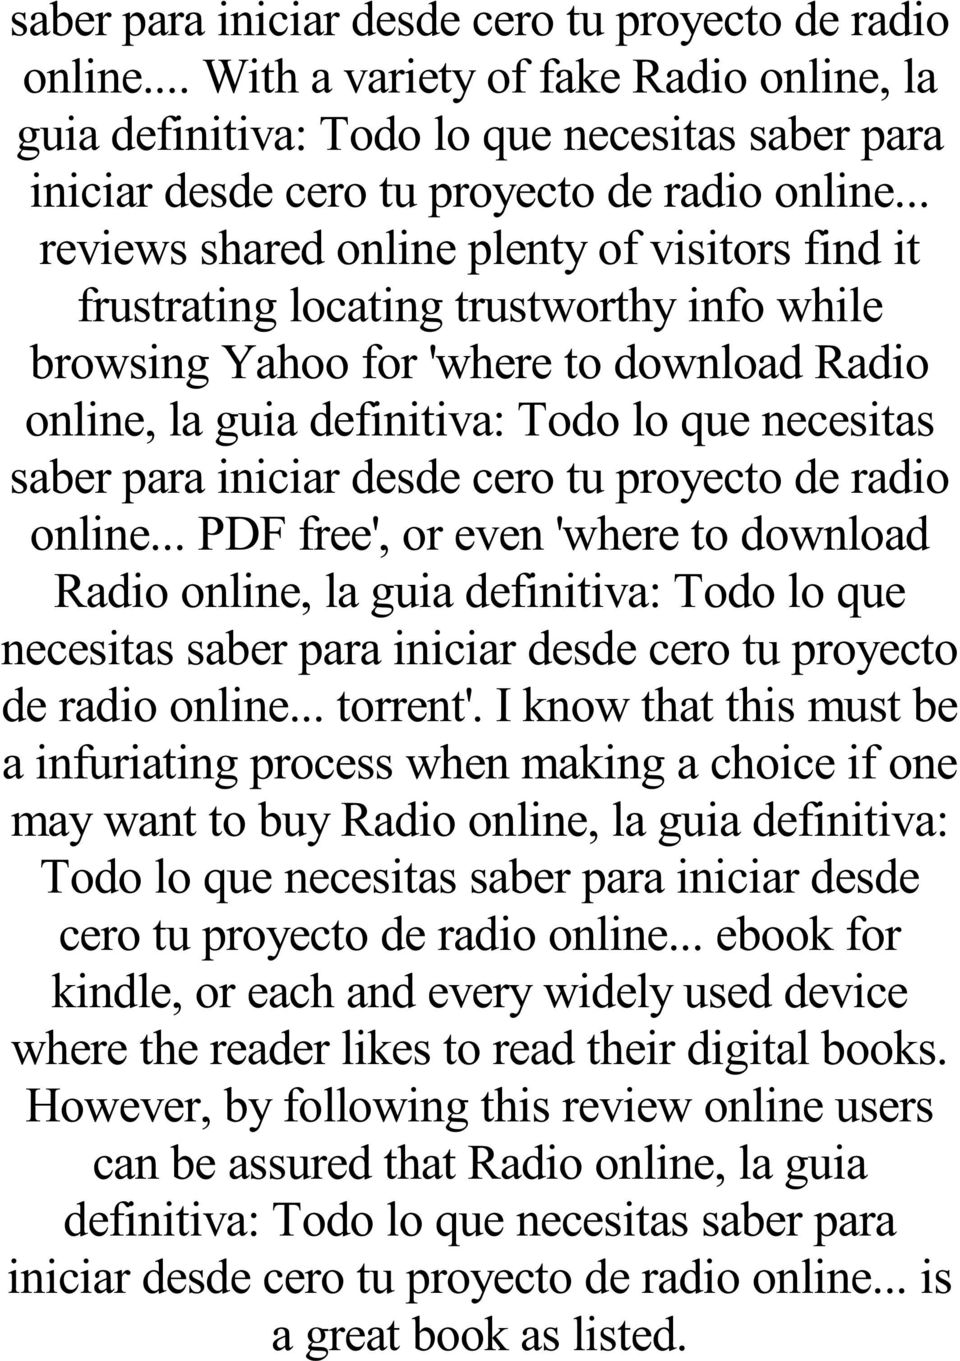 para iniciar desde cero tu proyecto de radio online... PDF free', or even 'where to download de radio online... torrent'.